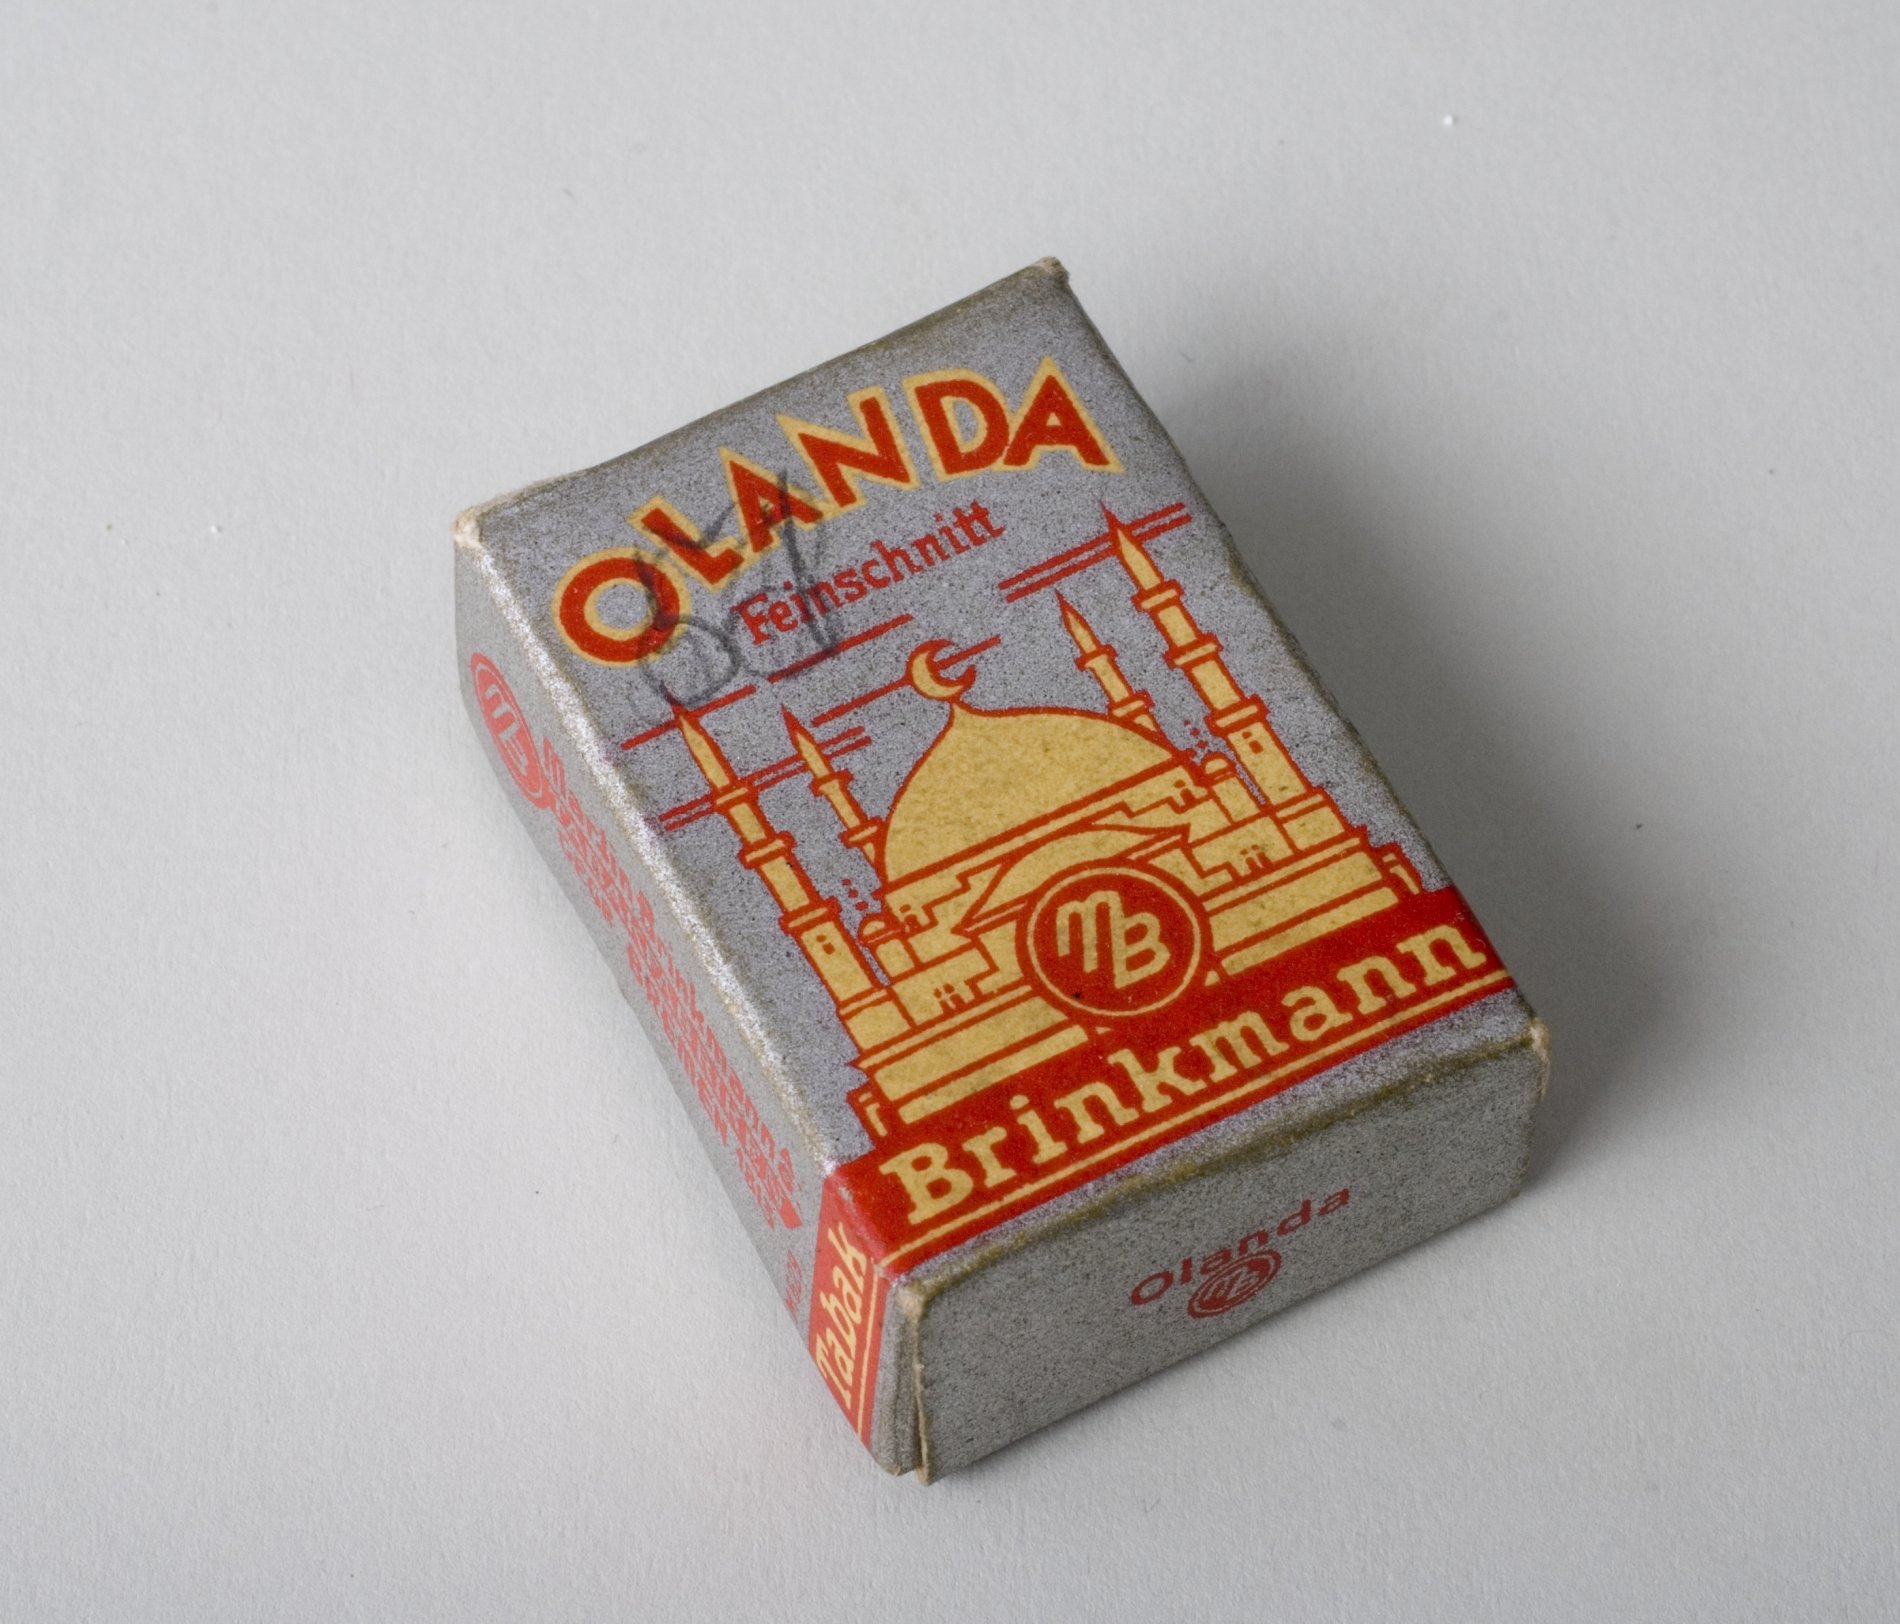 Miniaturschachtel "Olanda Feinschnitt" (Stiftung Domäne Dahlem - Landgut und Museum, Weiternutzung nur mit Genehmigung des Museums CC BY-NC-SA)